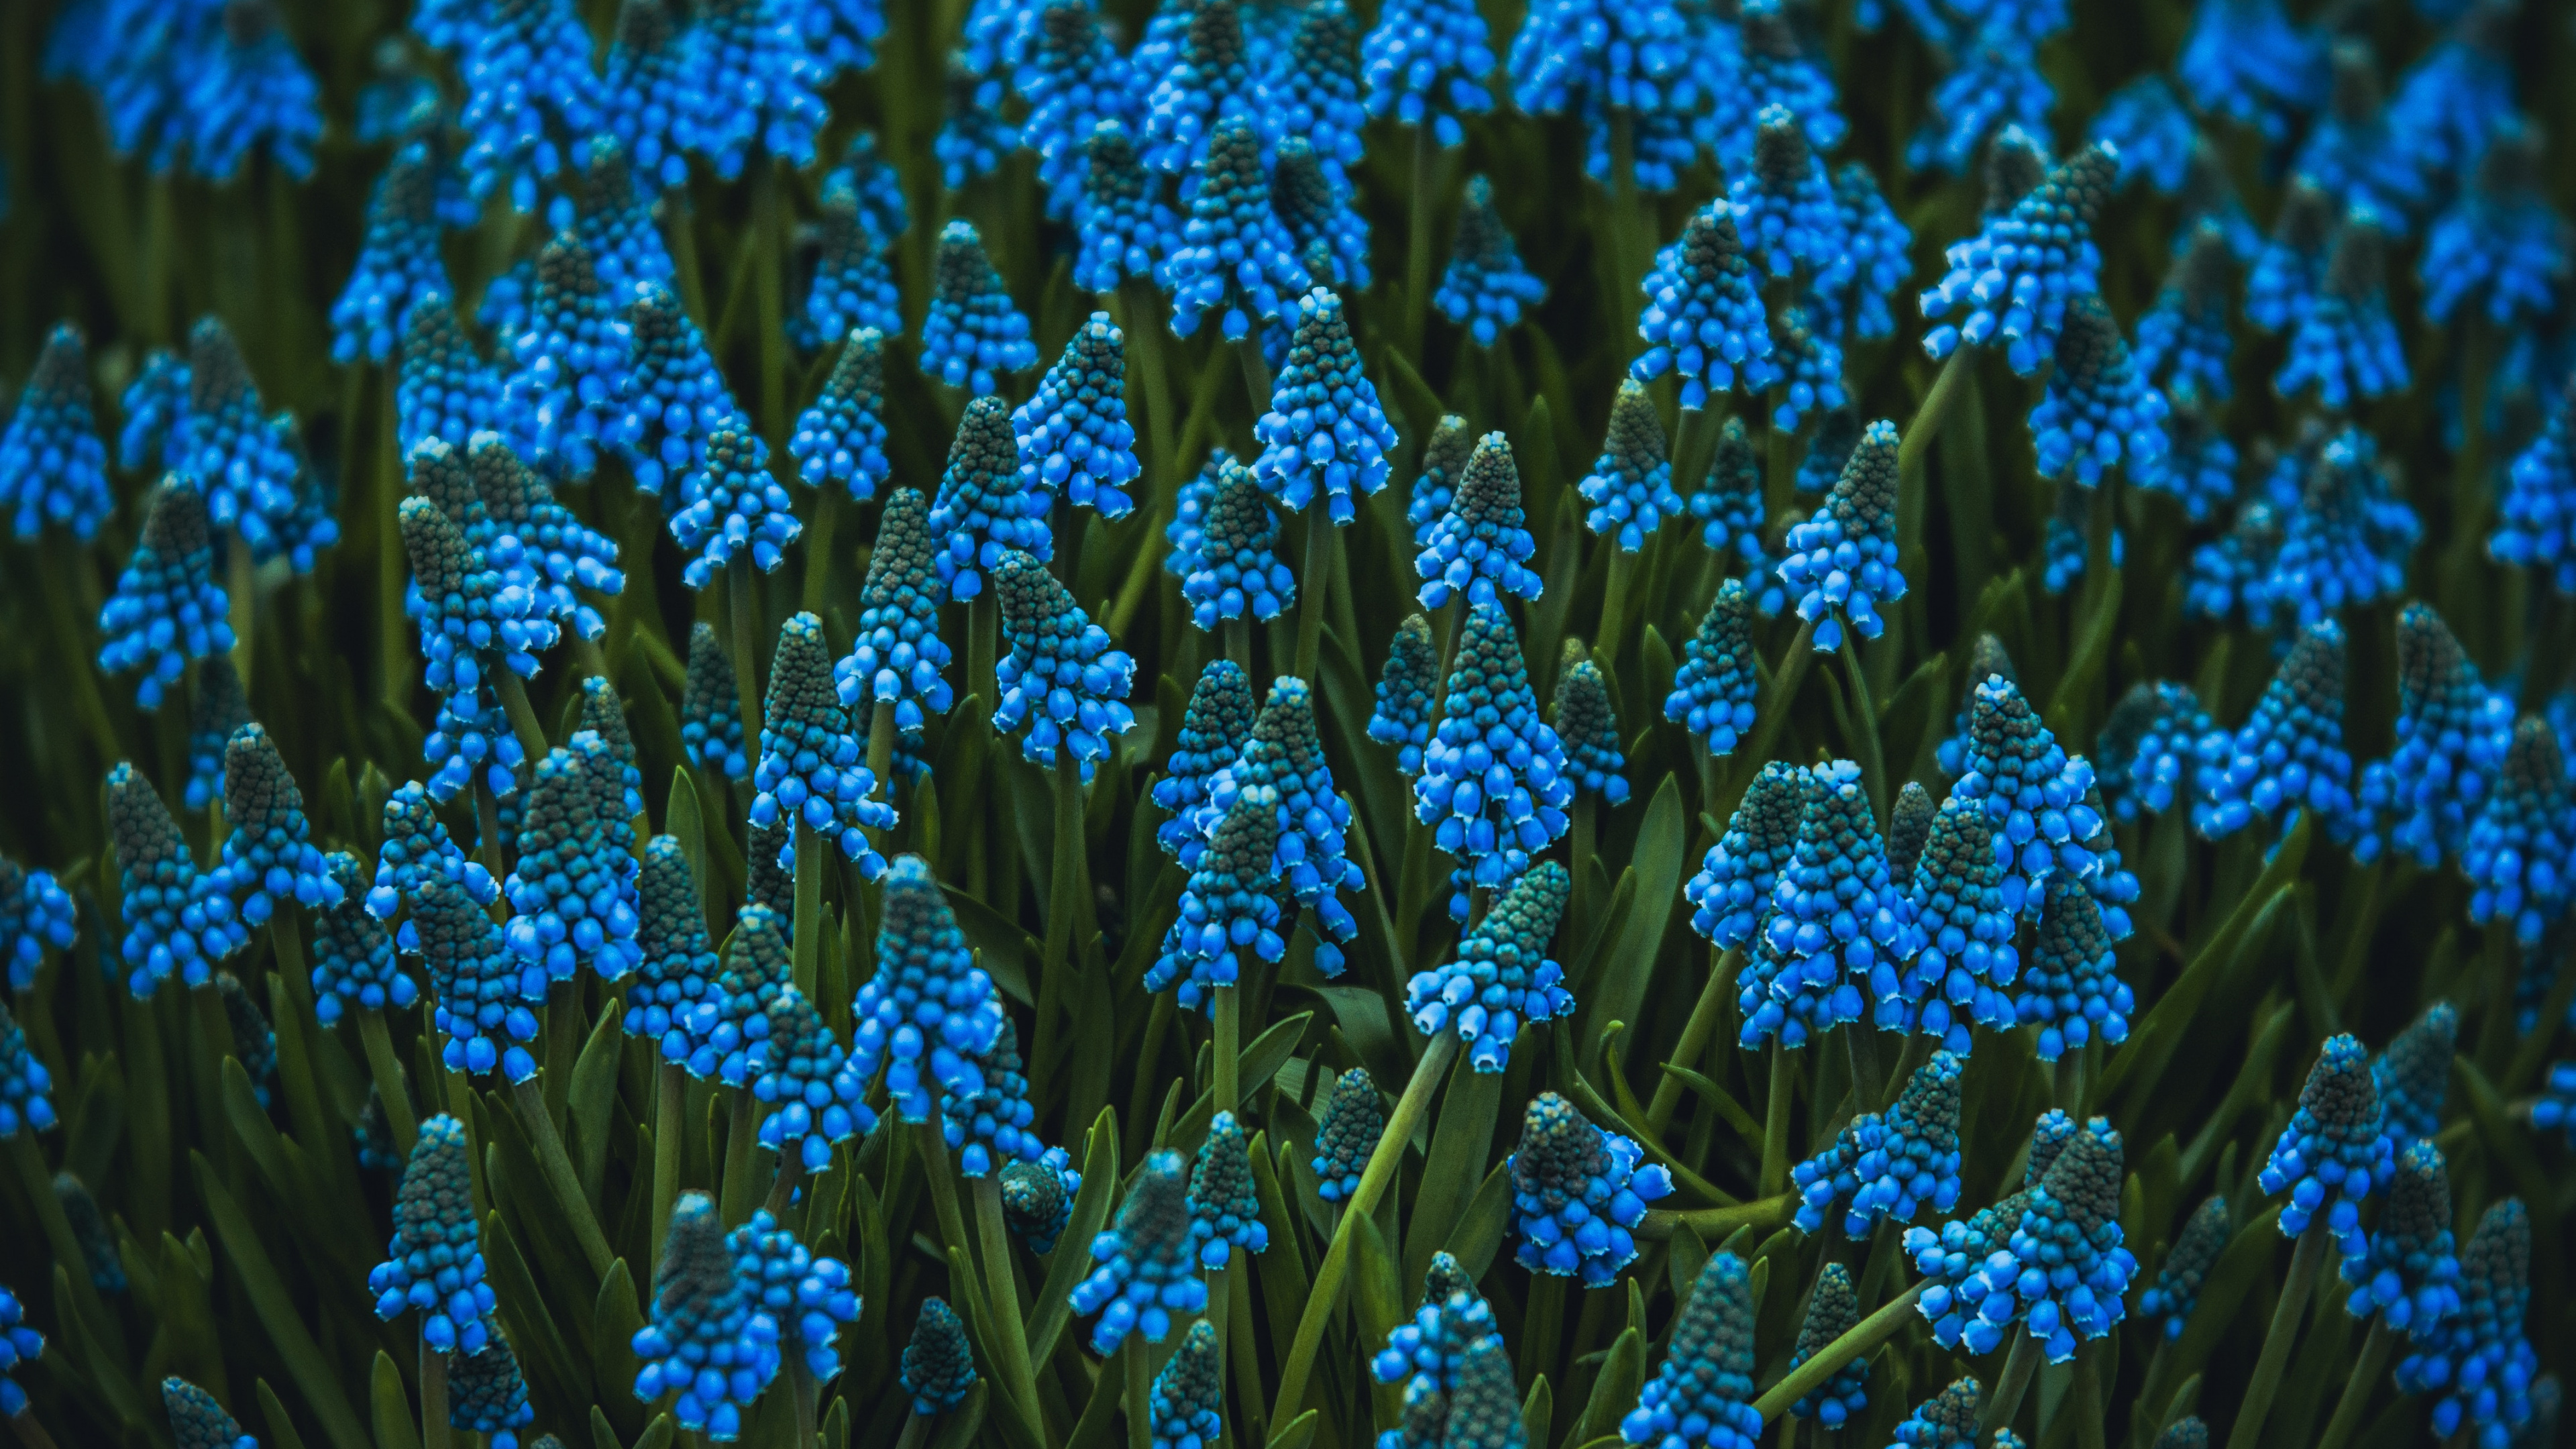 Blue Flowers in Tilt Shift Lens. Wallpaper in 3840x2160 Resolution